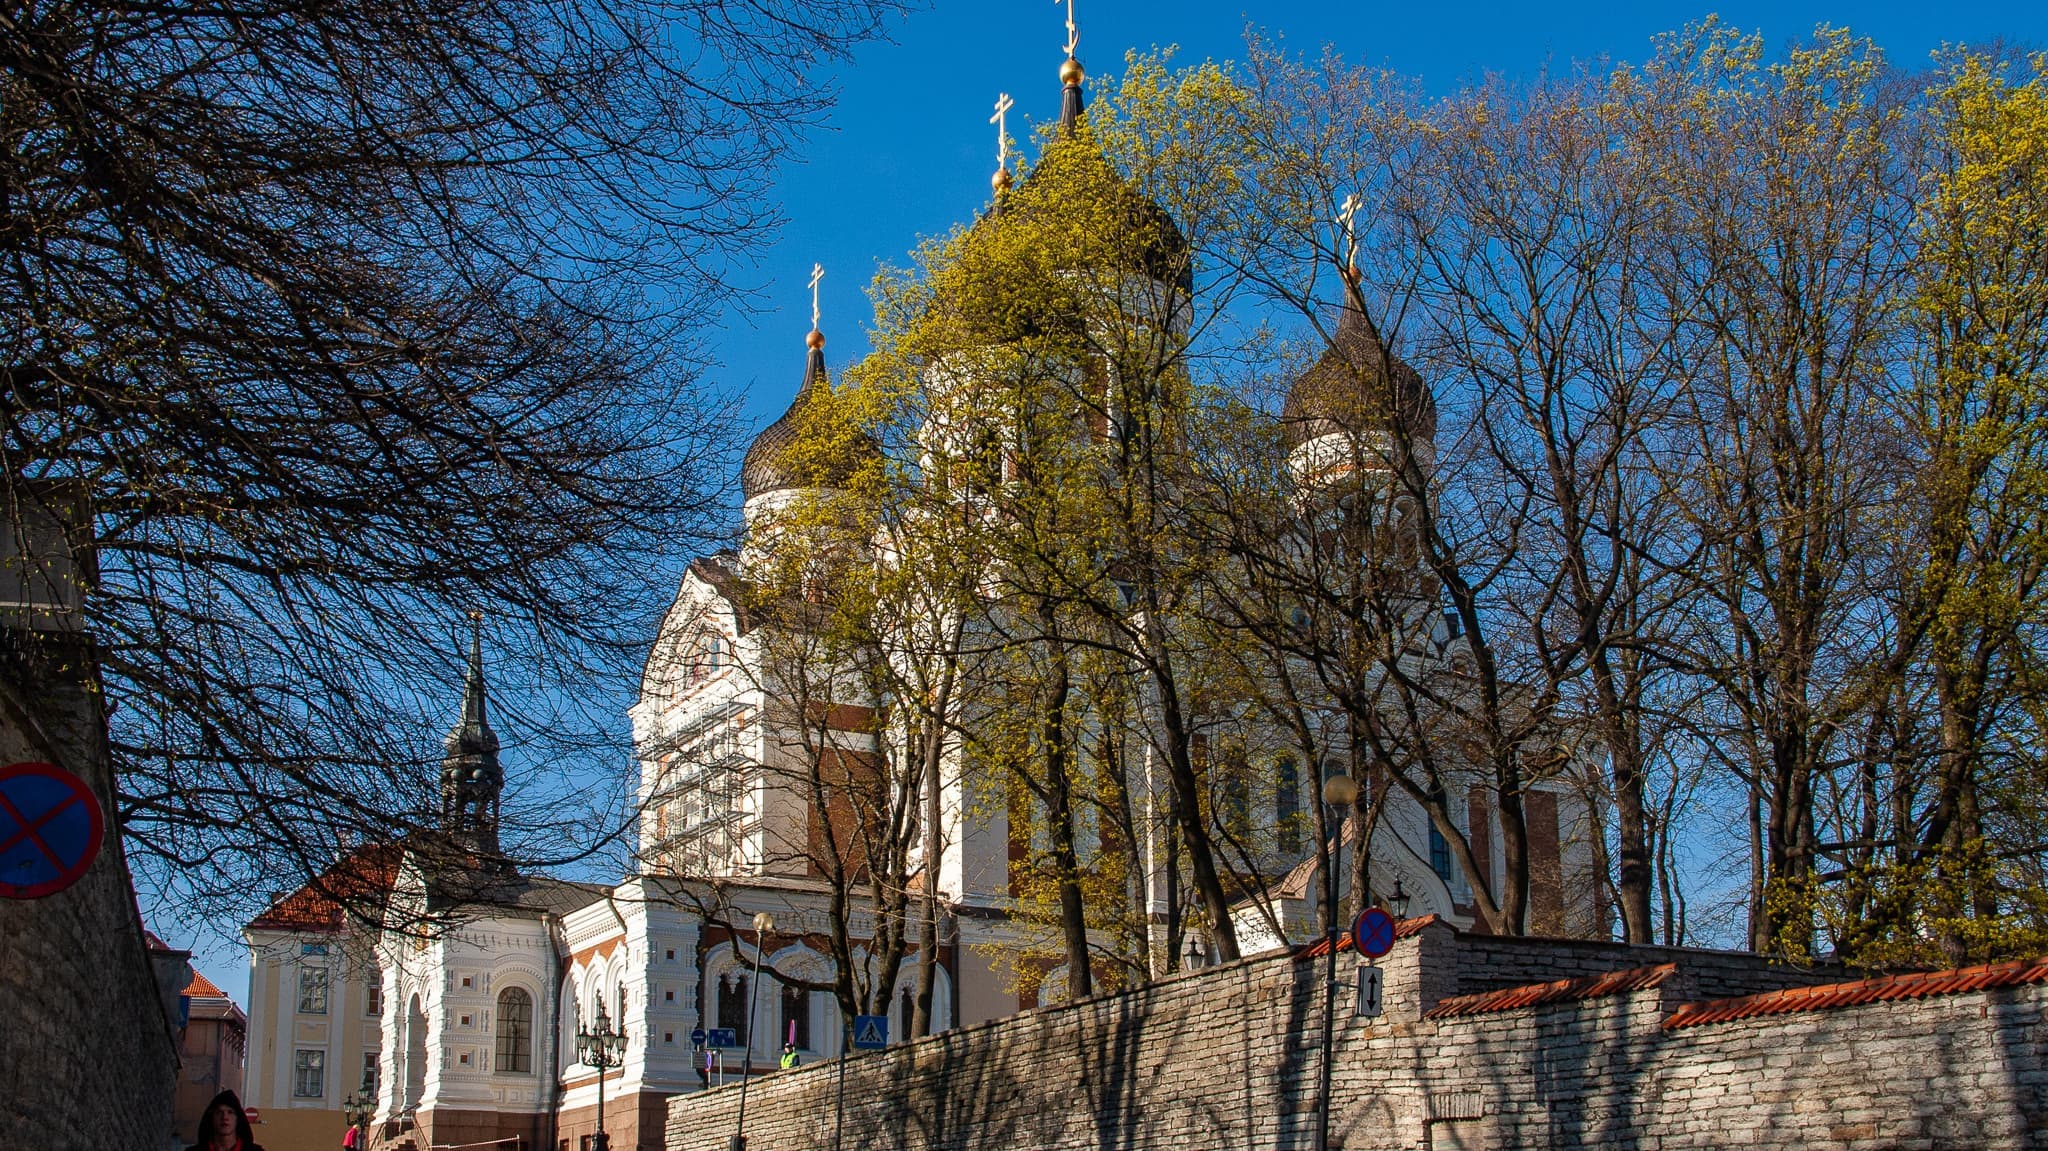 アレクサンドル・ネフスキー大聖堂アレクサンドル・ネフスキー大聖堂